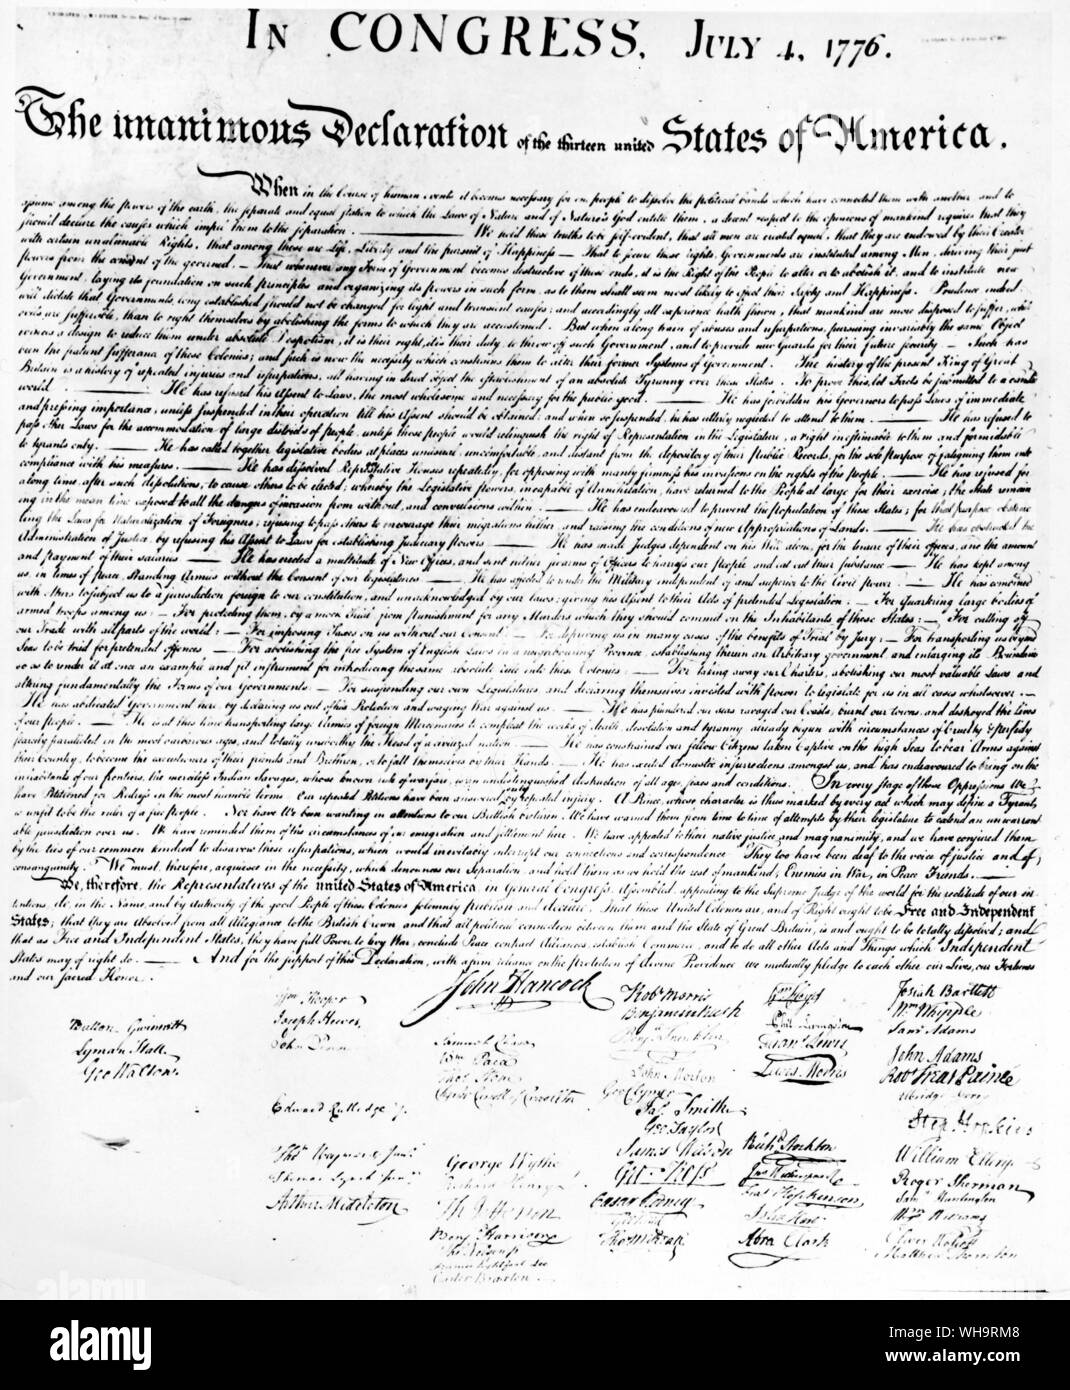 'L'unanime Dichiarazione dei tredici Stati Uniti d'America " 4 luglio 1776. Foto Stock